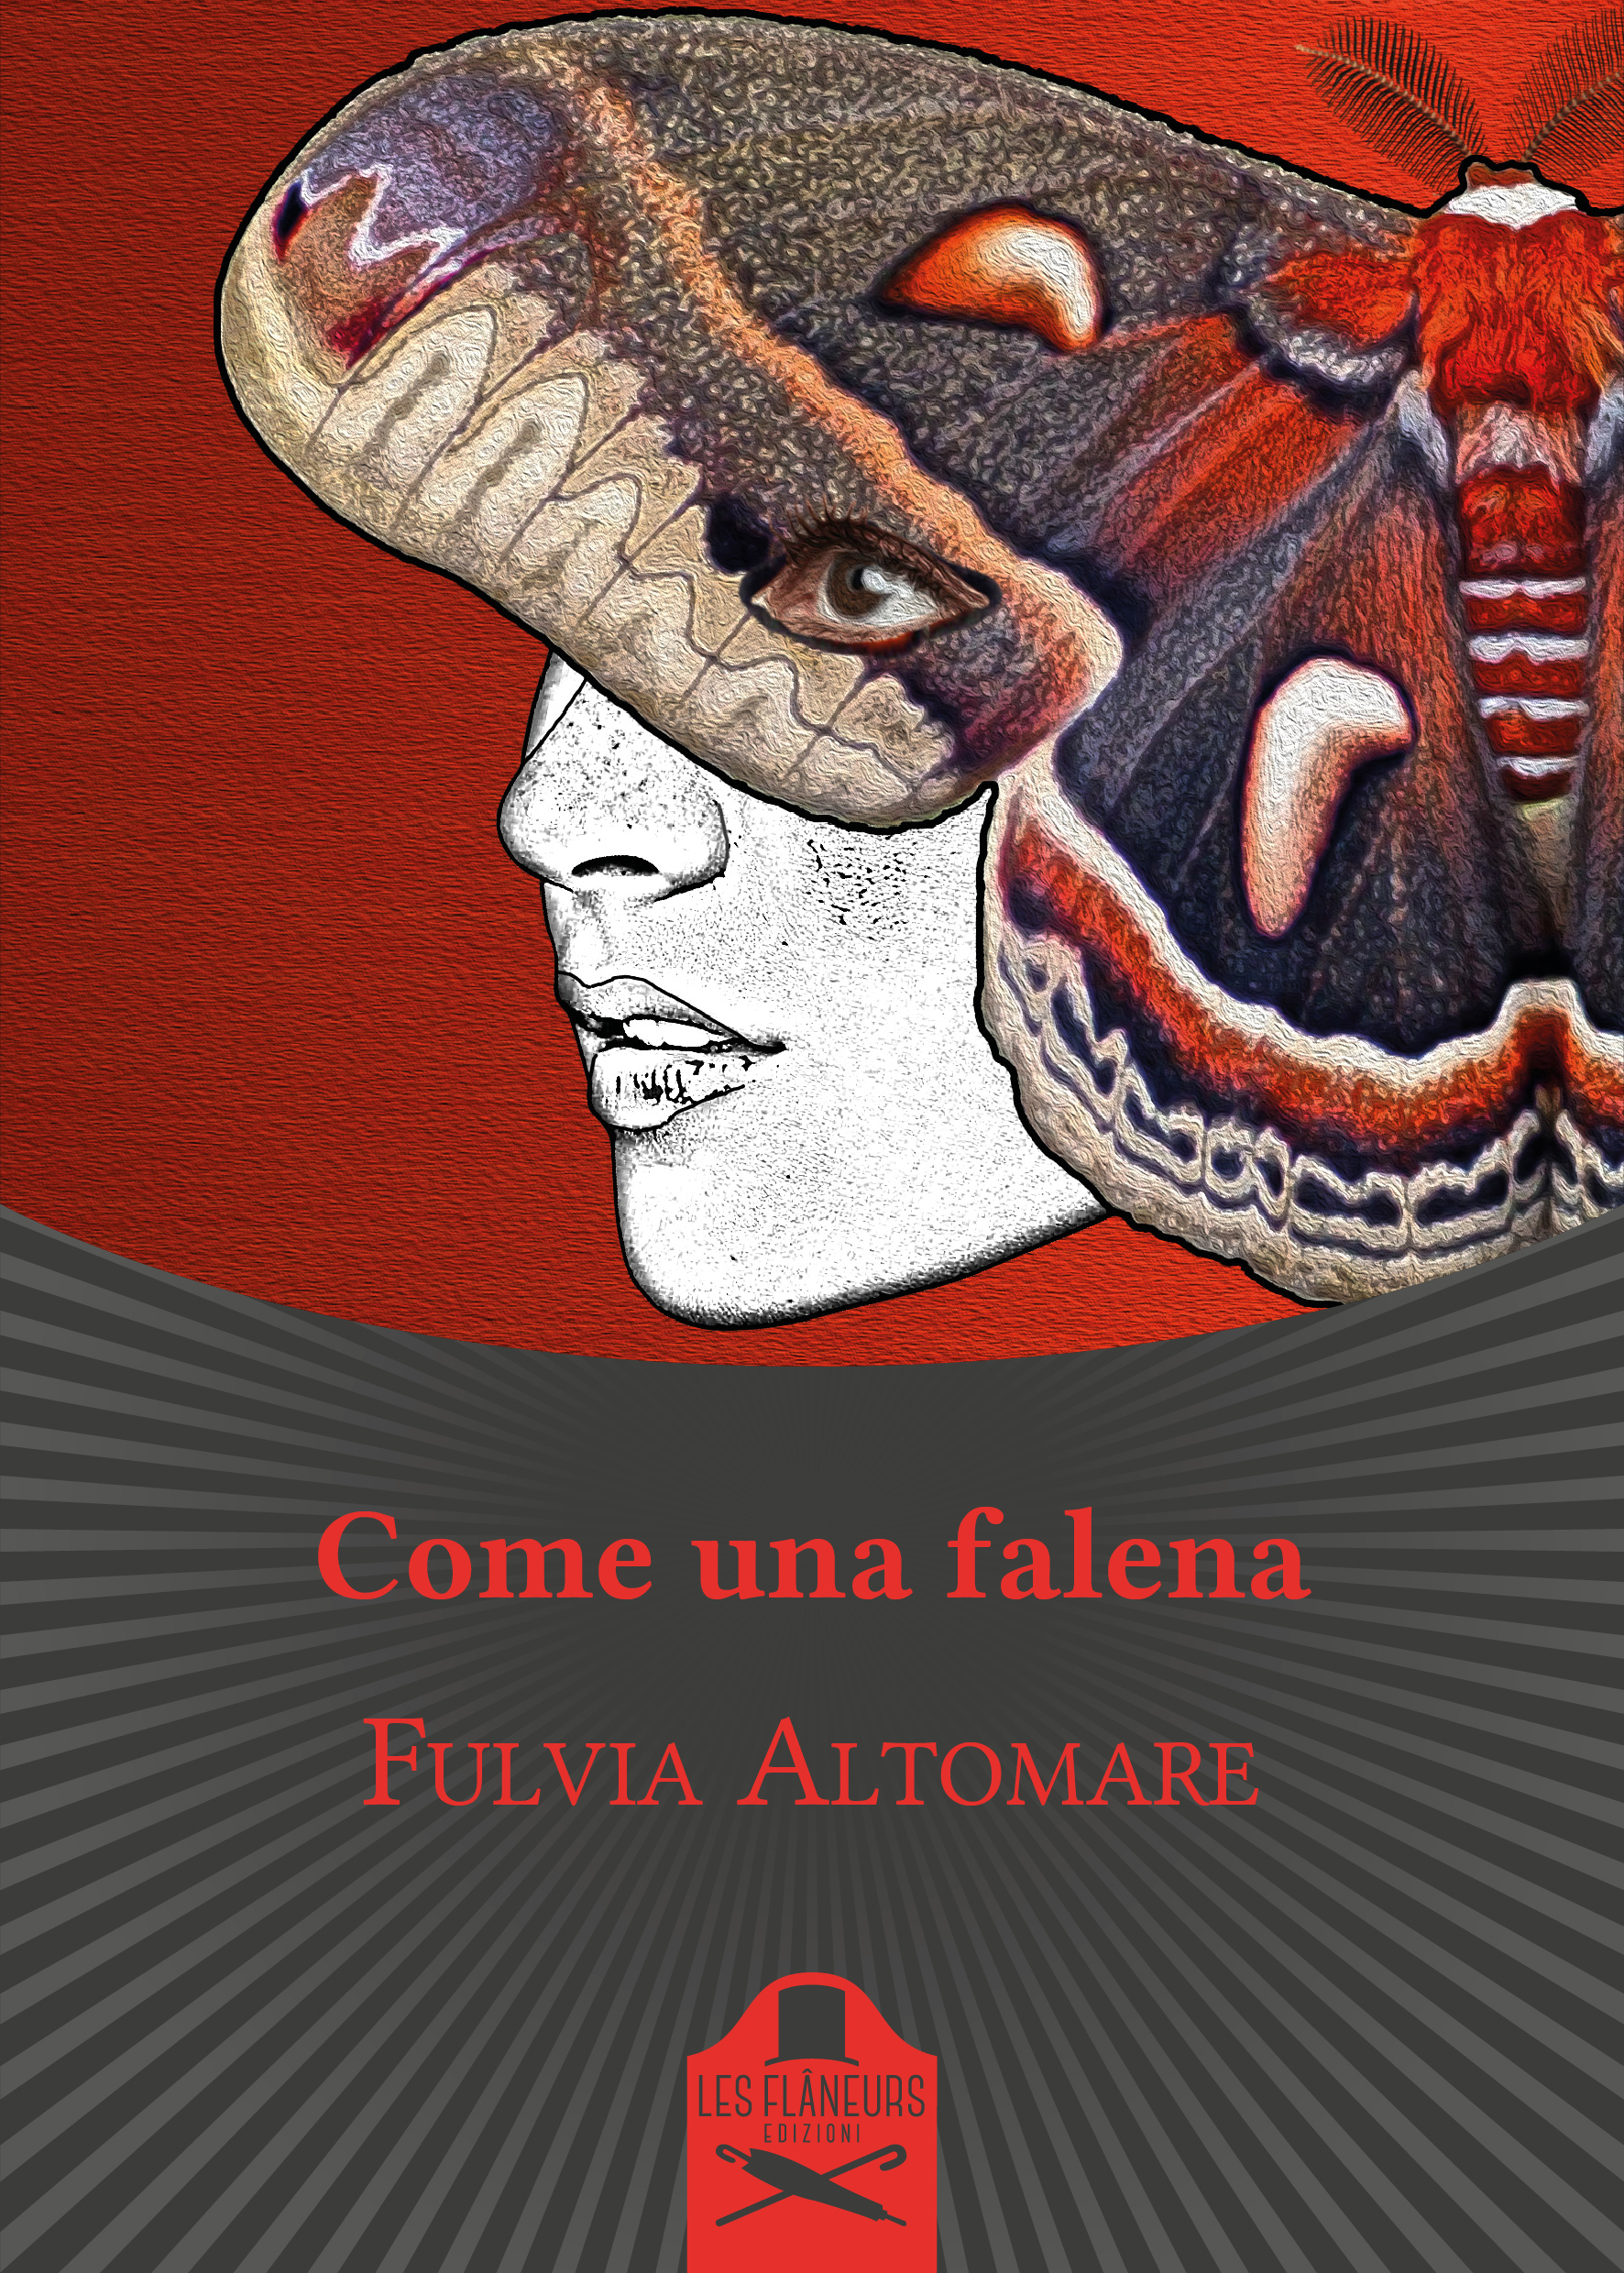 Fulvia Altomare presenta il romanzo “Come una falena”